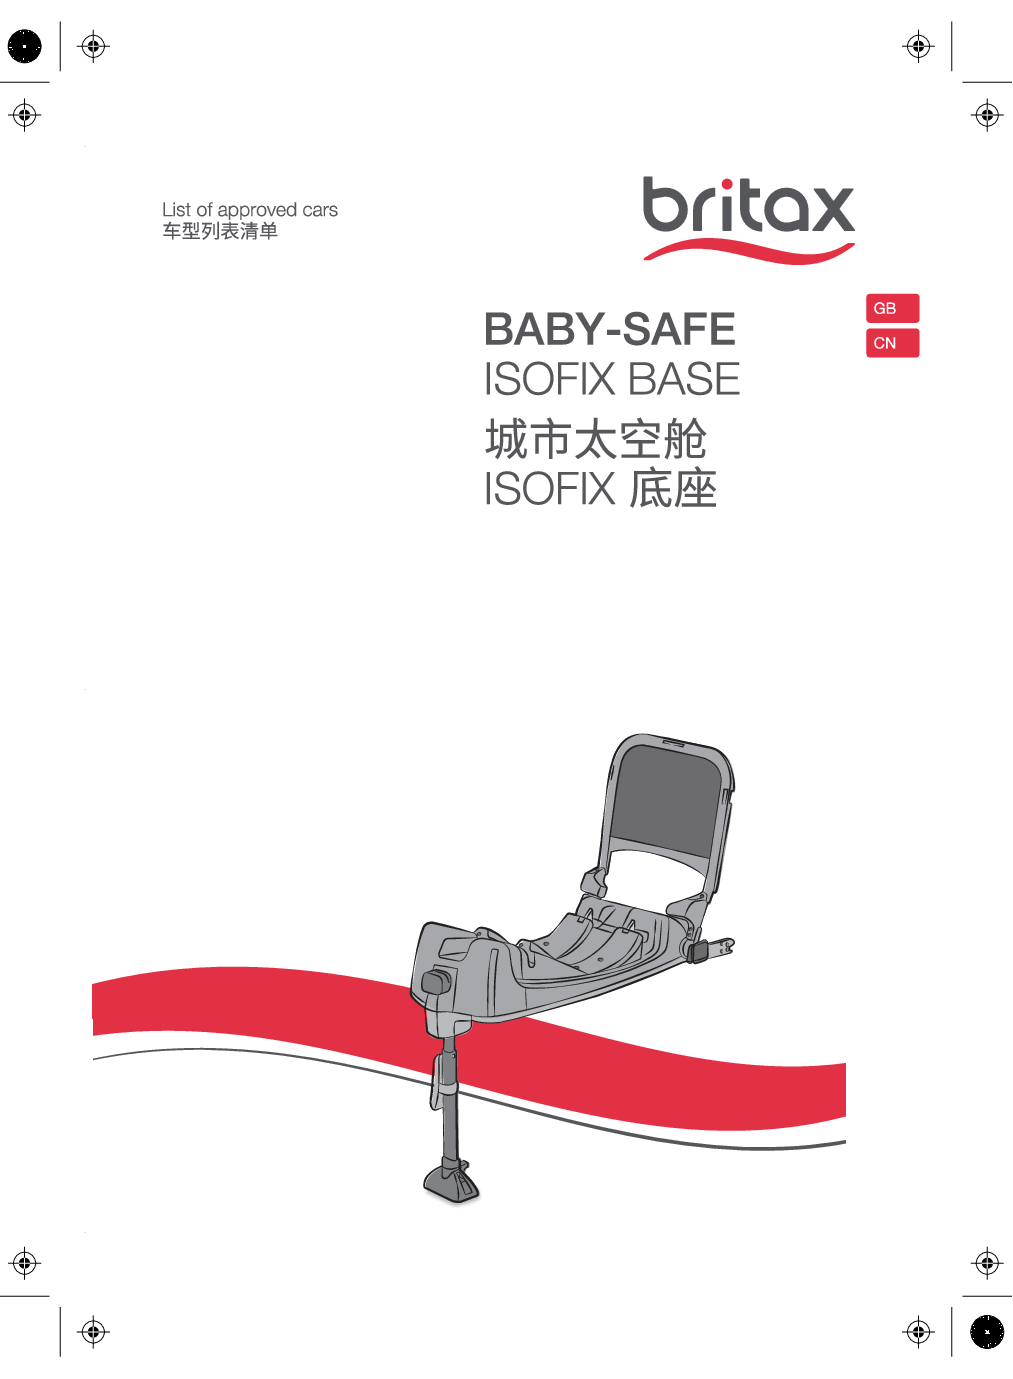 宝得适 BRITAX Babay-safe ISOFIX Base, 城市太空舱ISOFIX底座 适用车型 使用说明书 封面